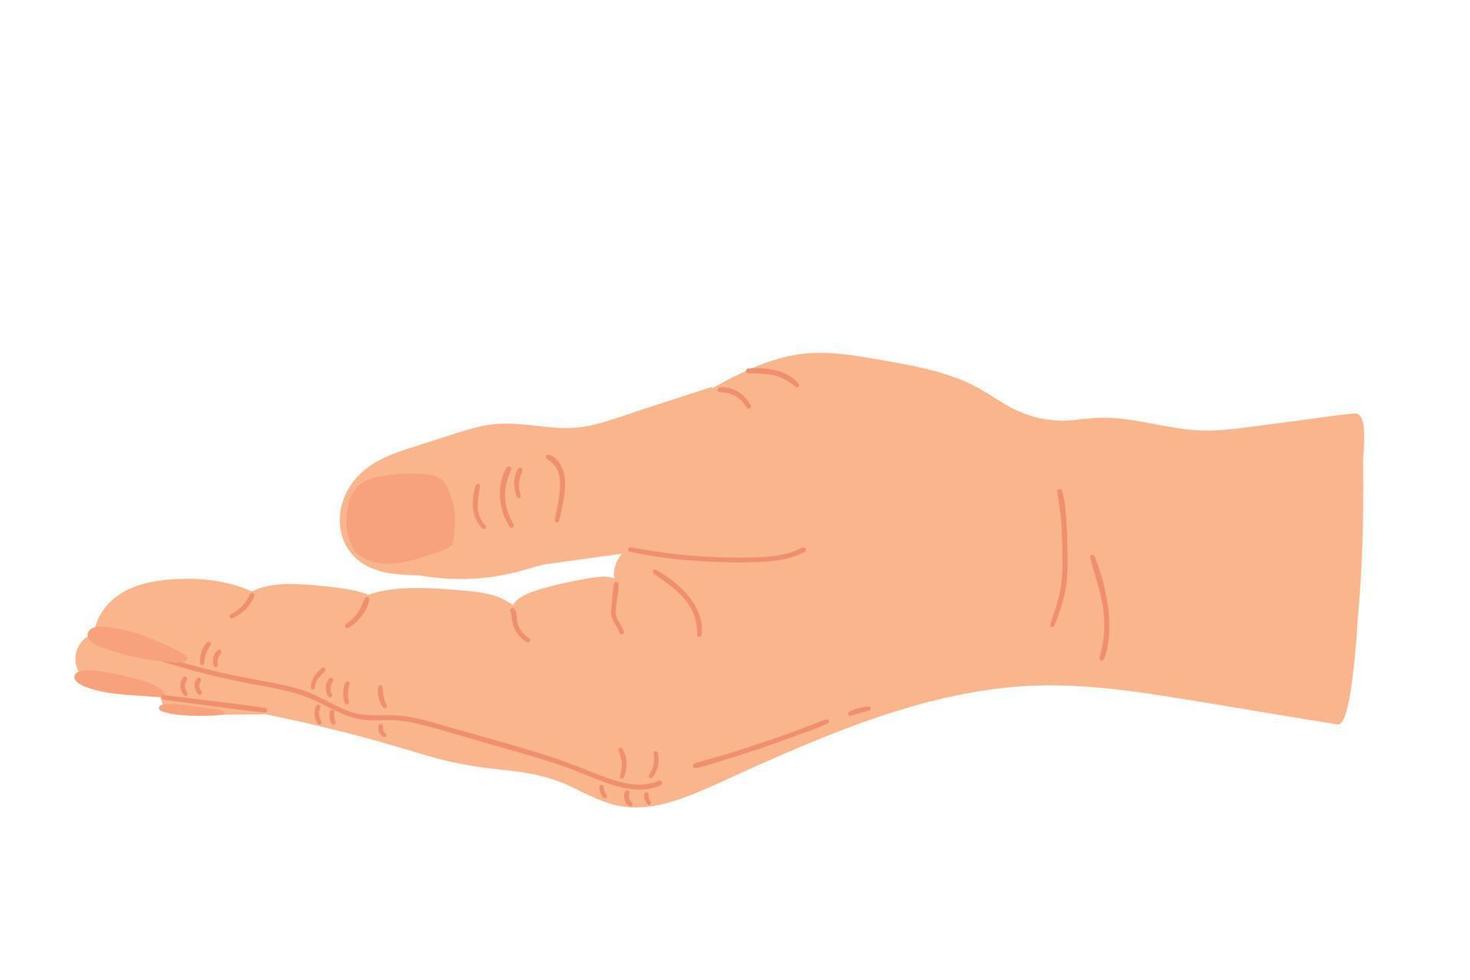 abierto mano mirando arriba para Orando y preguntando. palma mano arriba. gesto con mano. vector plano ilustración.